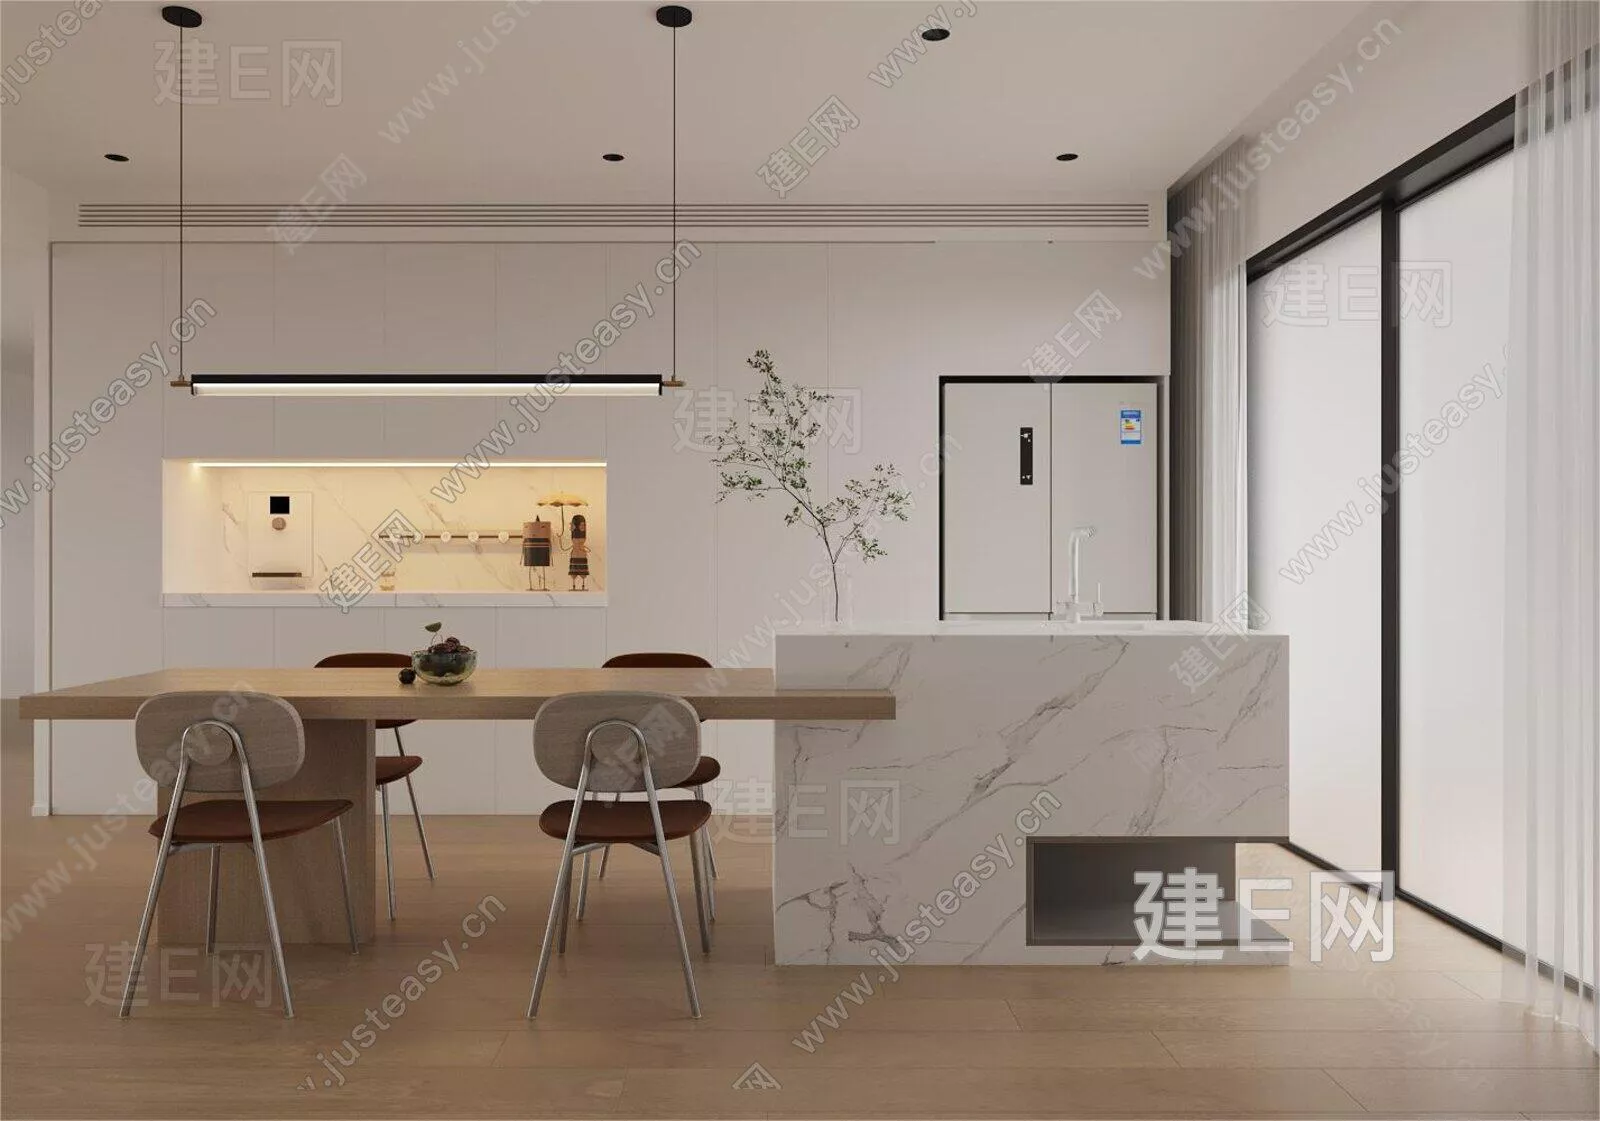 MODERN DINING ROOM - SKETCHUP 3D SCENE - ENSCAPE - 104549007